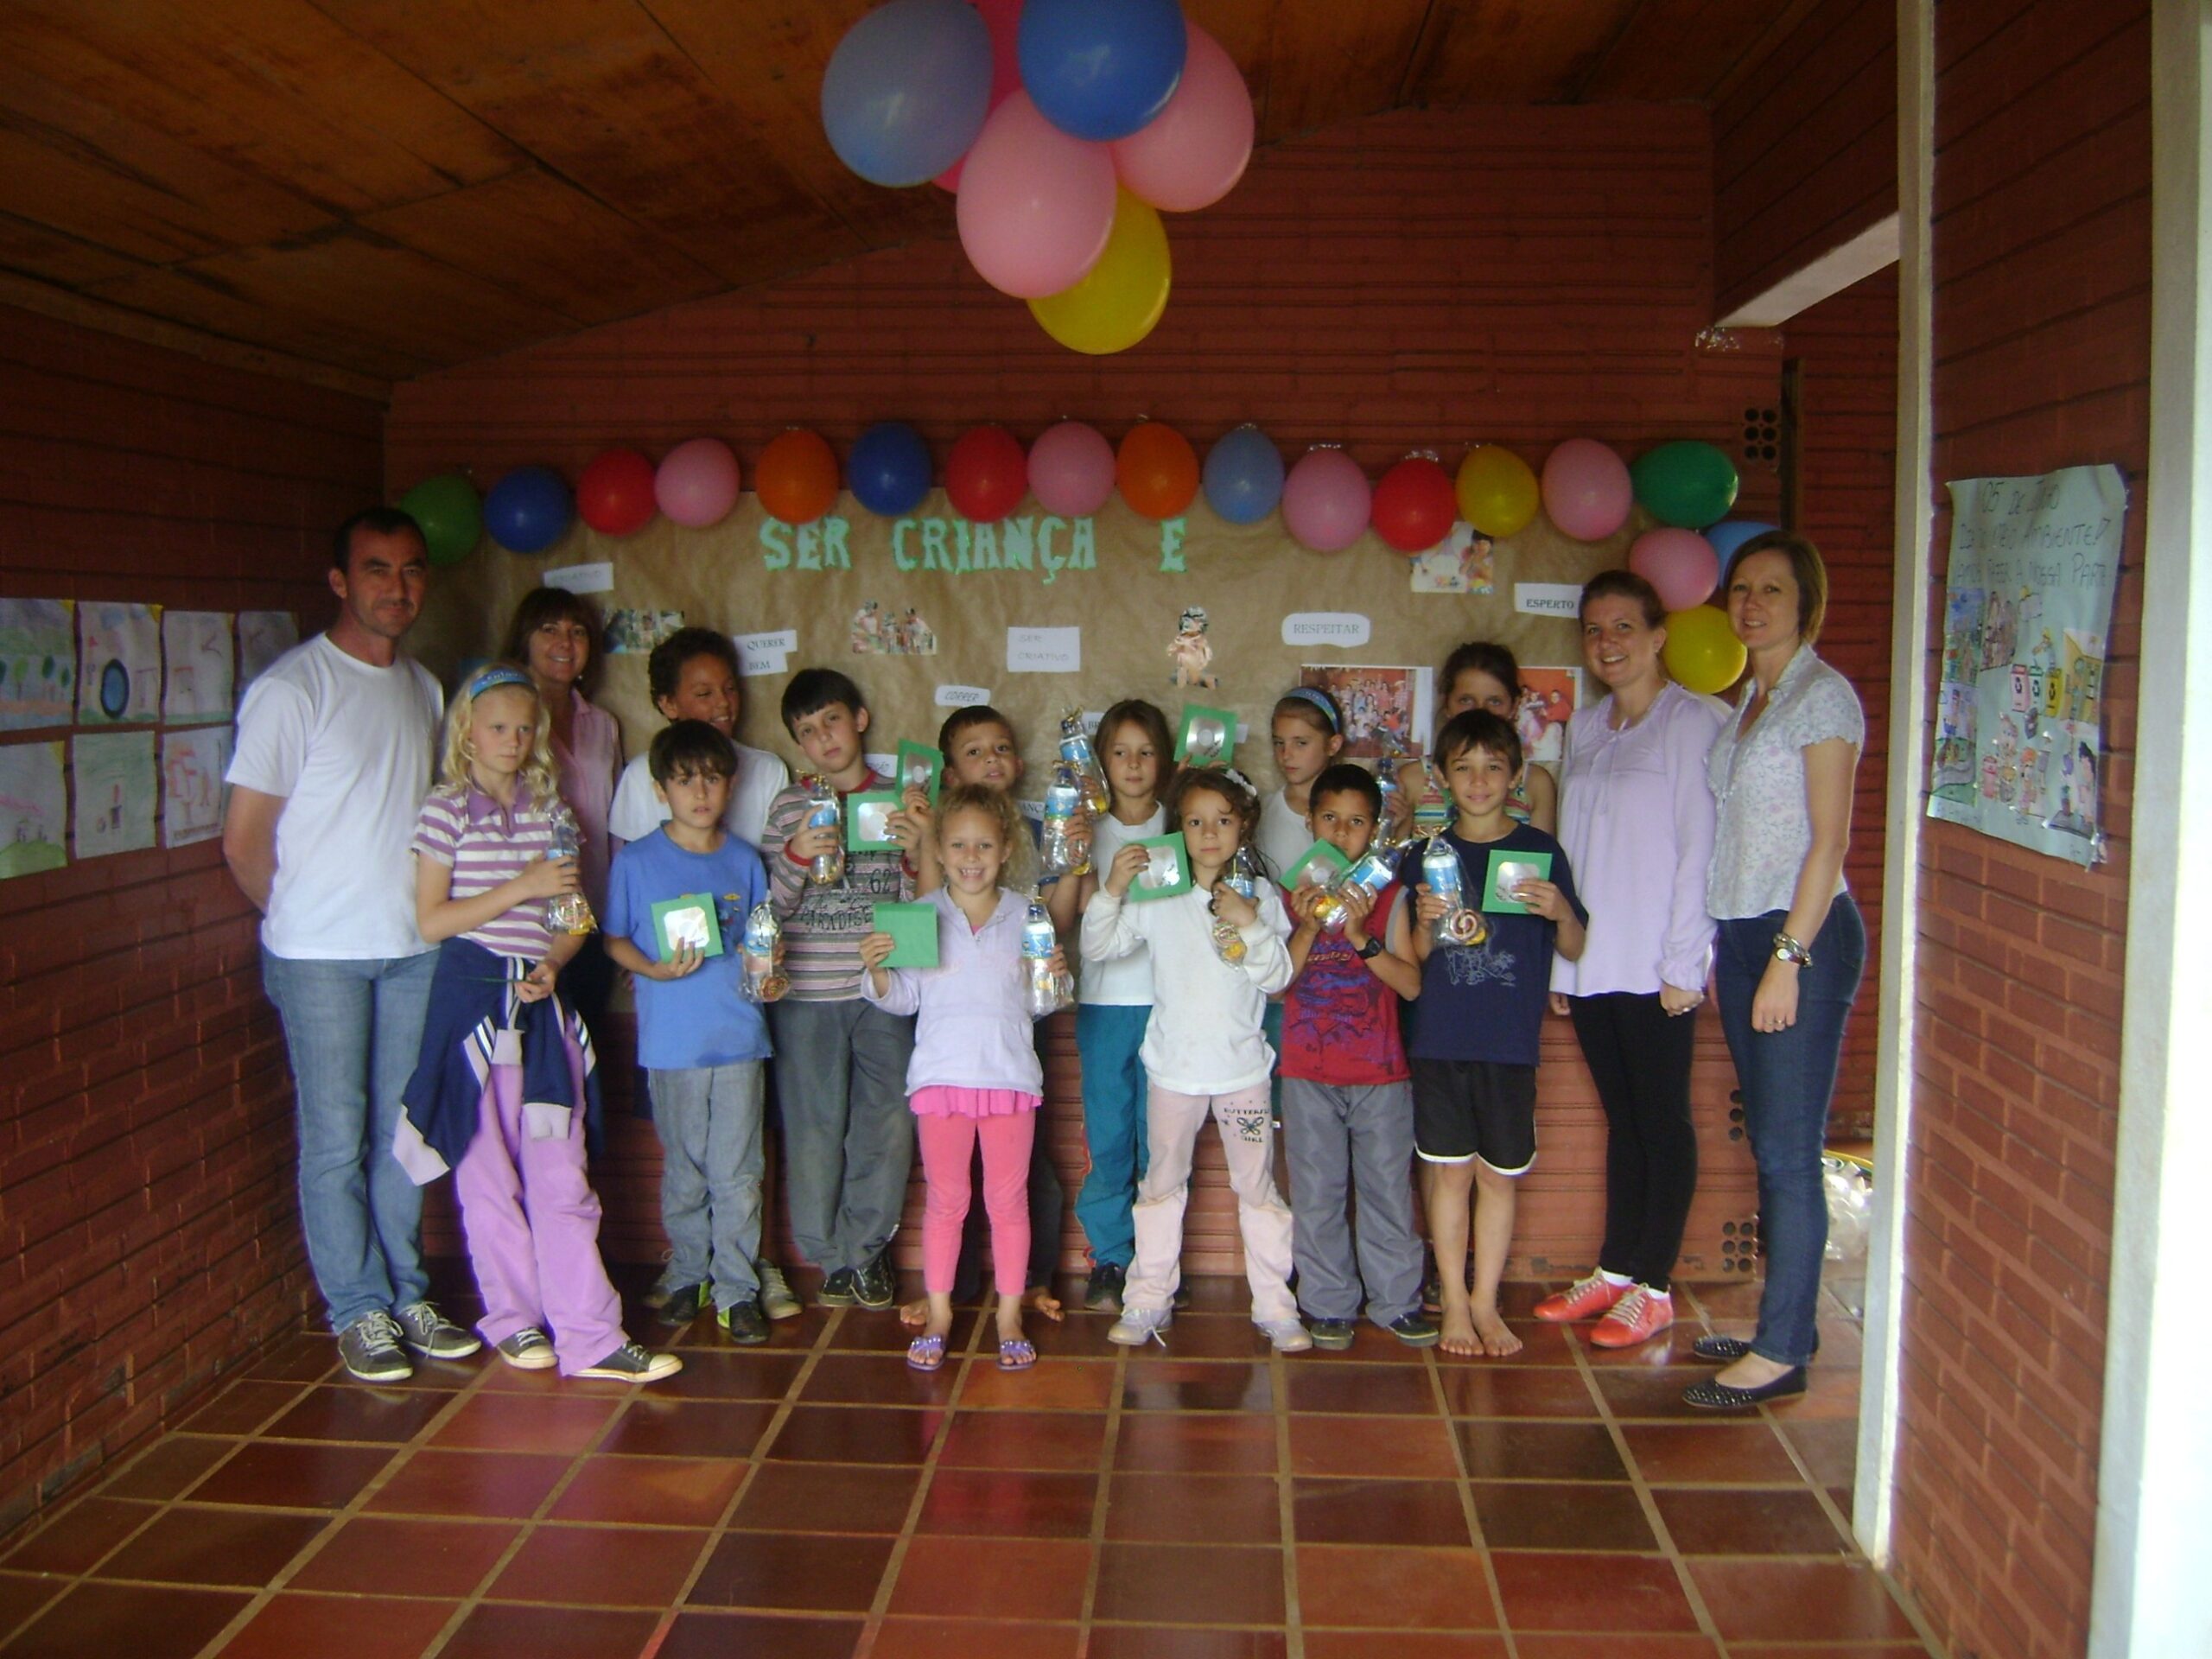 Crianças do SCFV, junto com vice-prefeito Osmar Prestes e representantes da Secretaria de Assistência Social do município